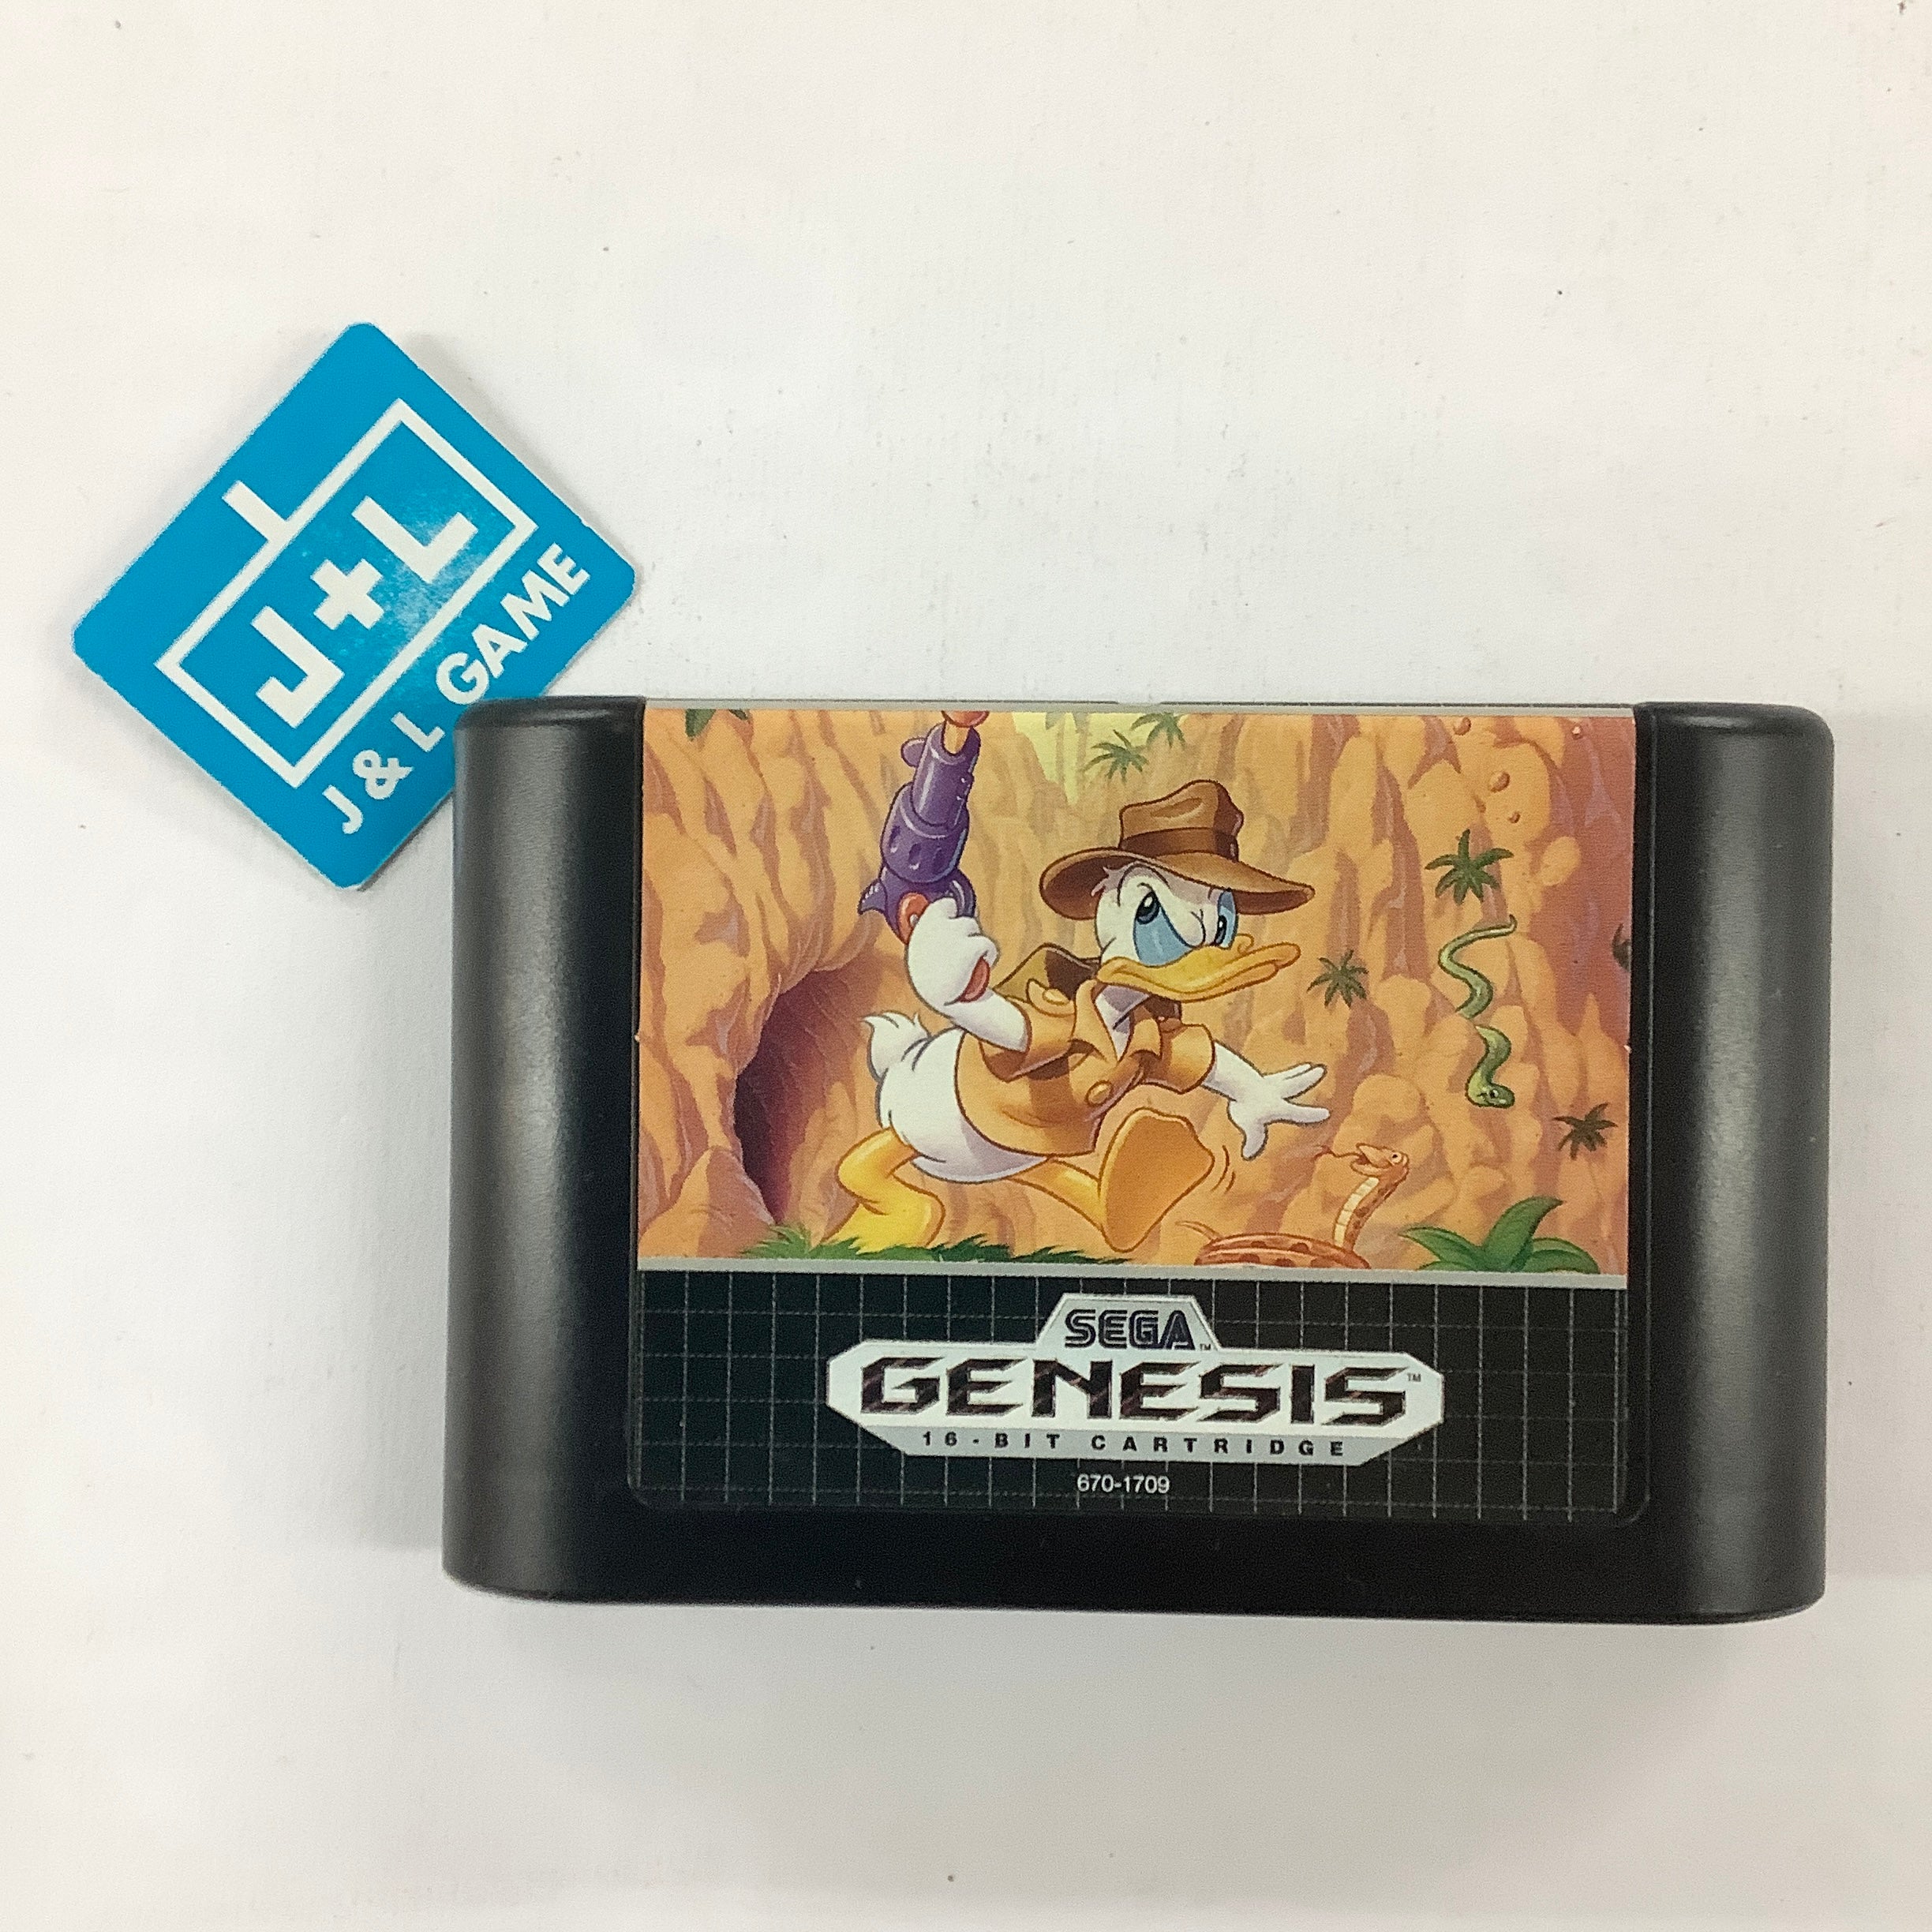 QuackShot starring Donald Duck - (SG) SEGA Genesis  [Pre-Owned] Video Games Sega   